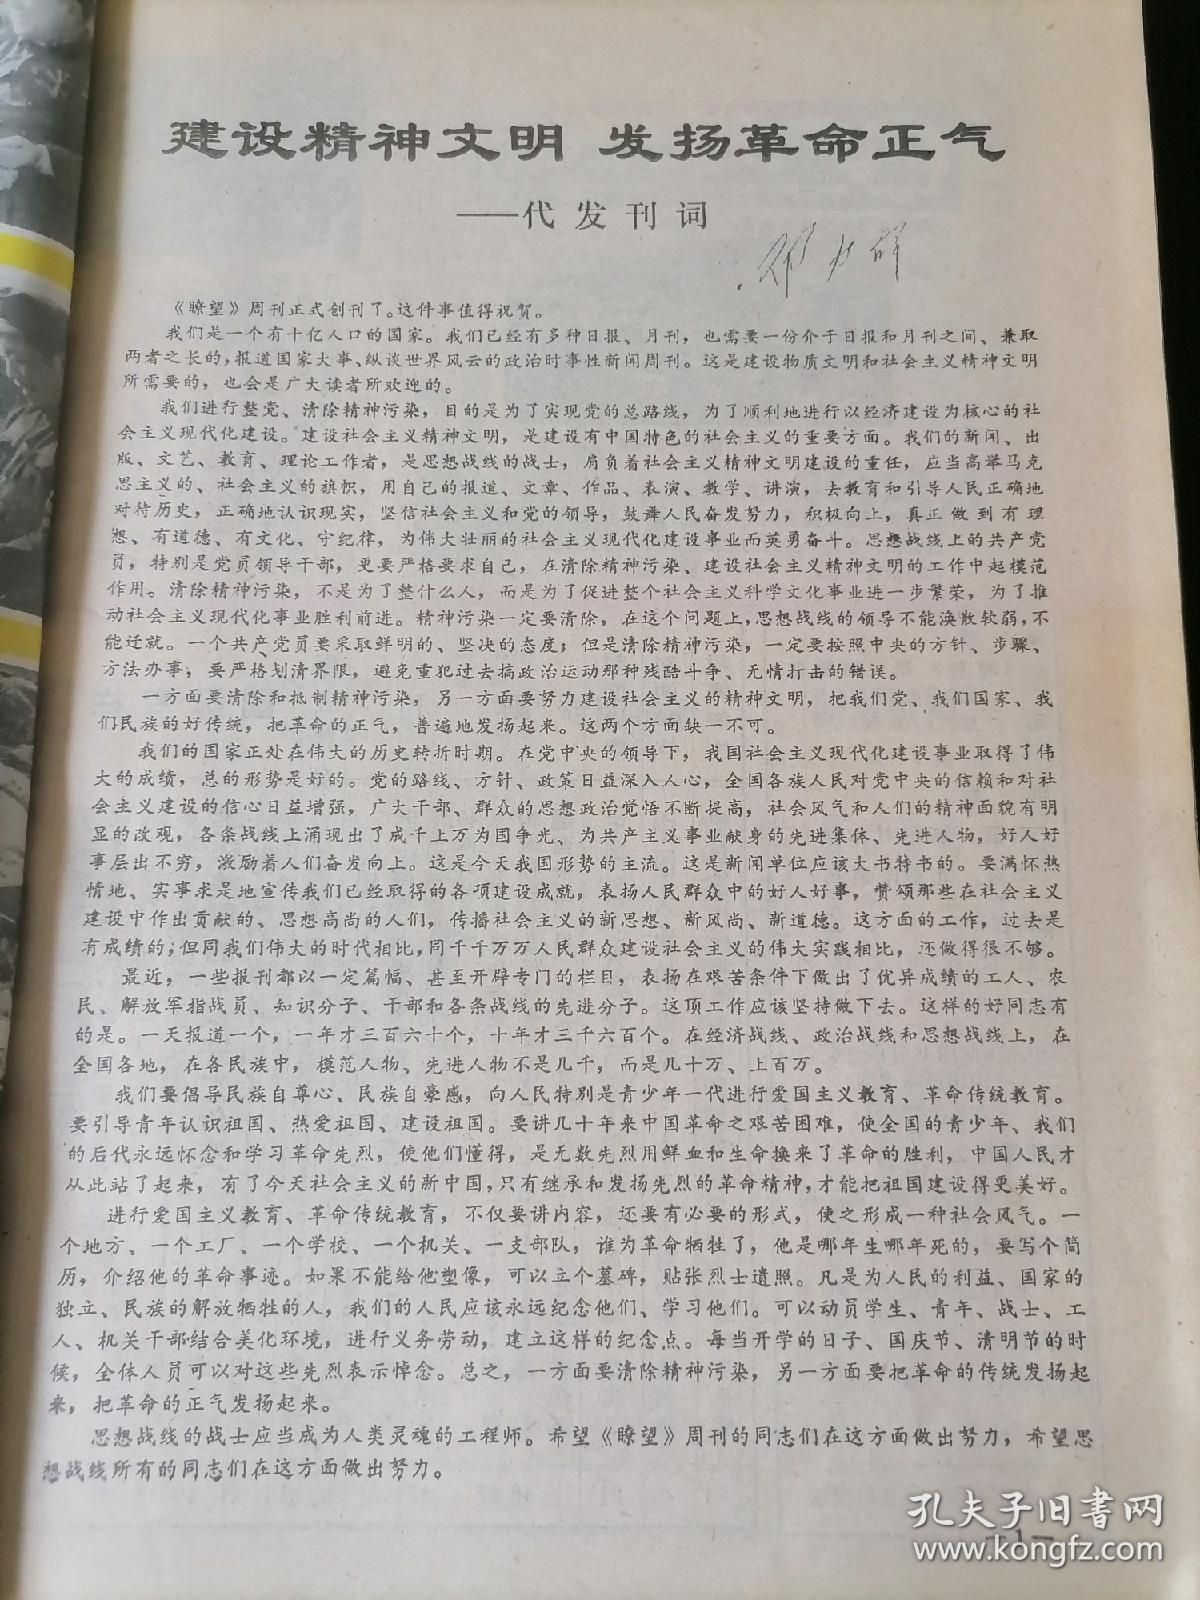 《瞭望》周刊，1984年1-20、31-52期（第1期为创刊号），共计42期，合订为四册